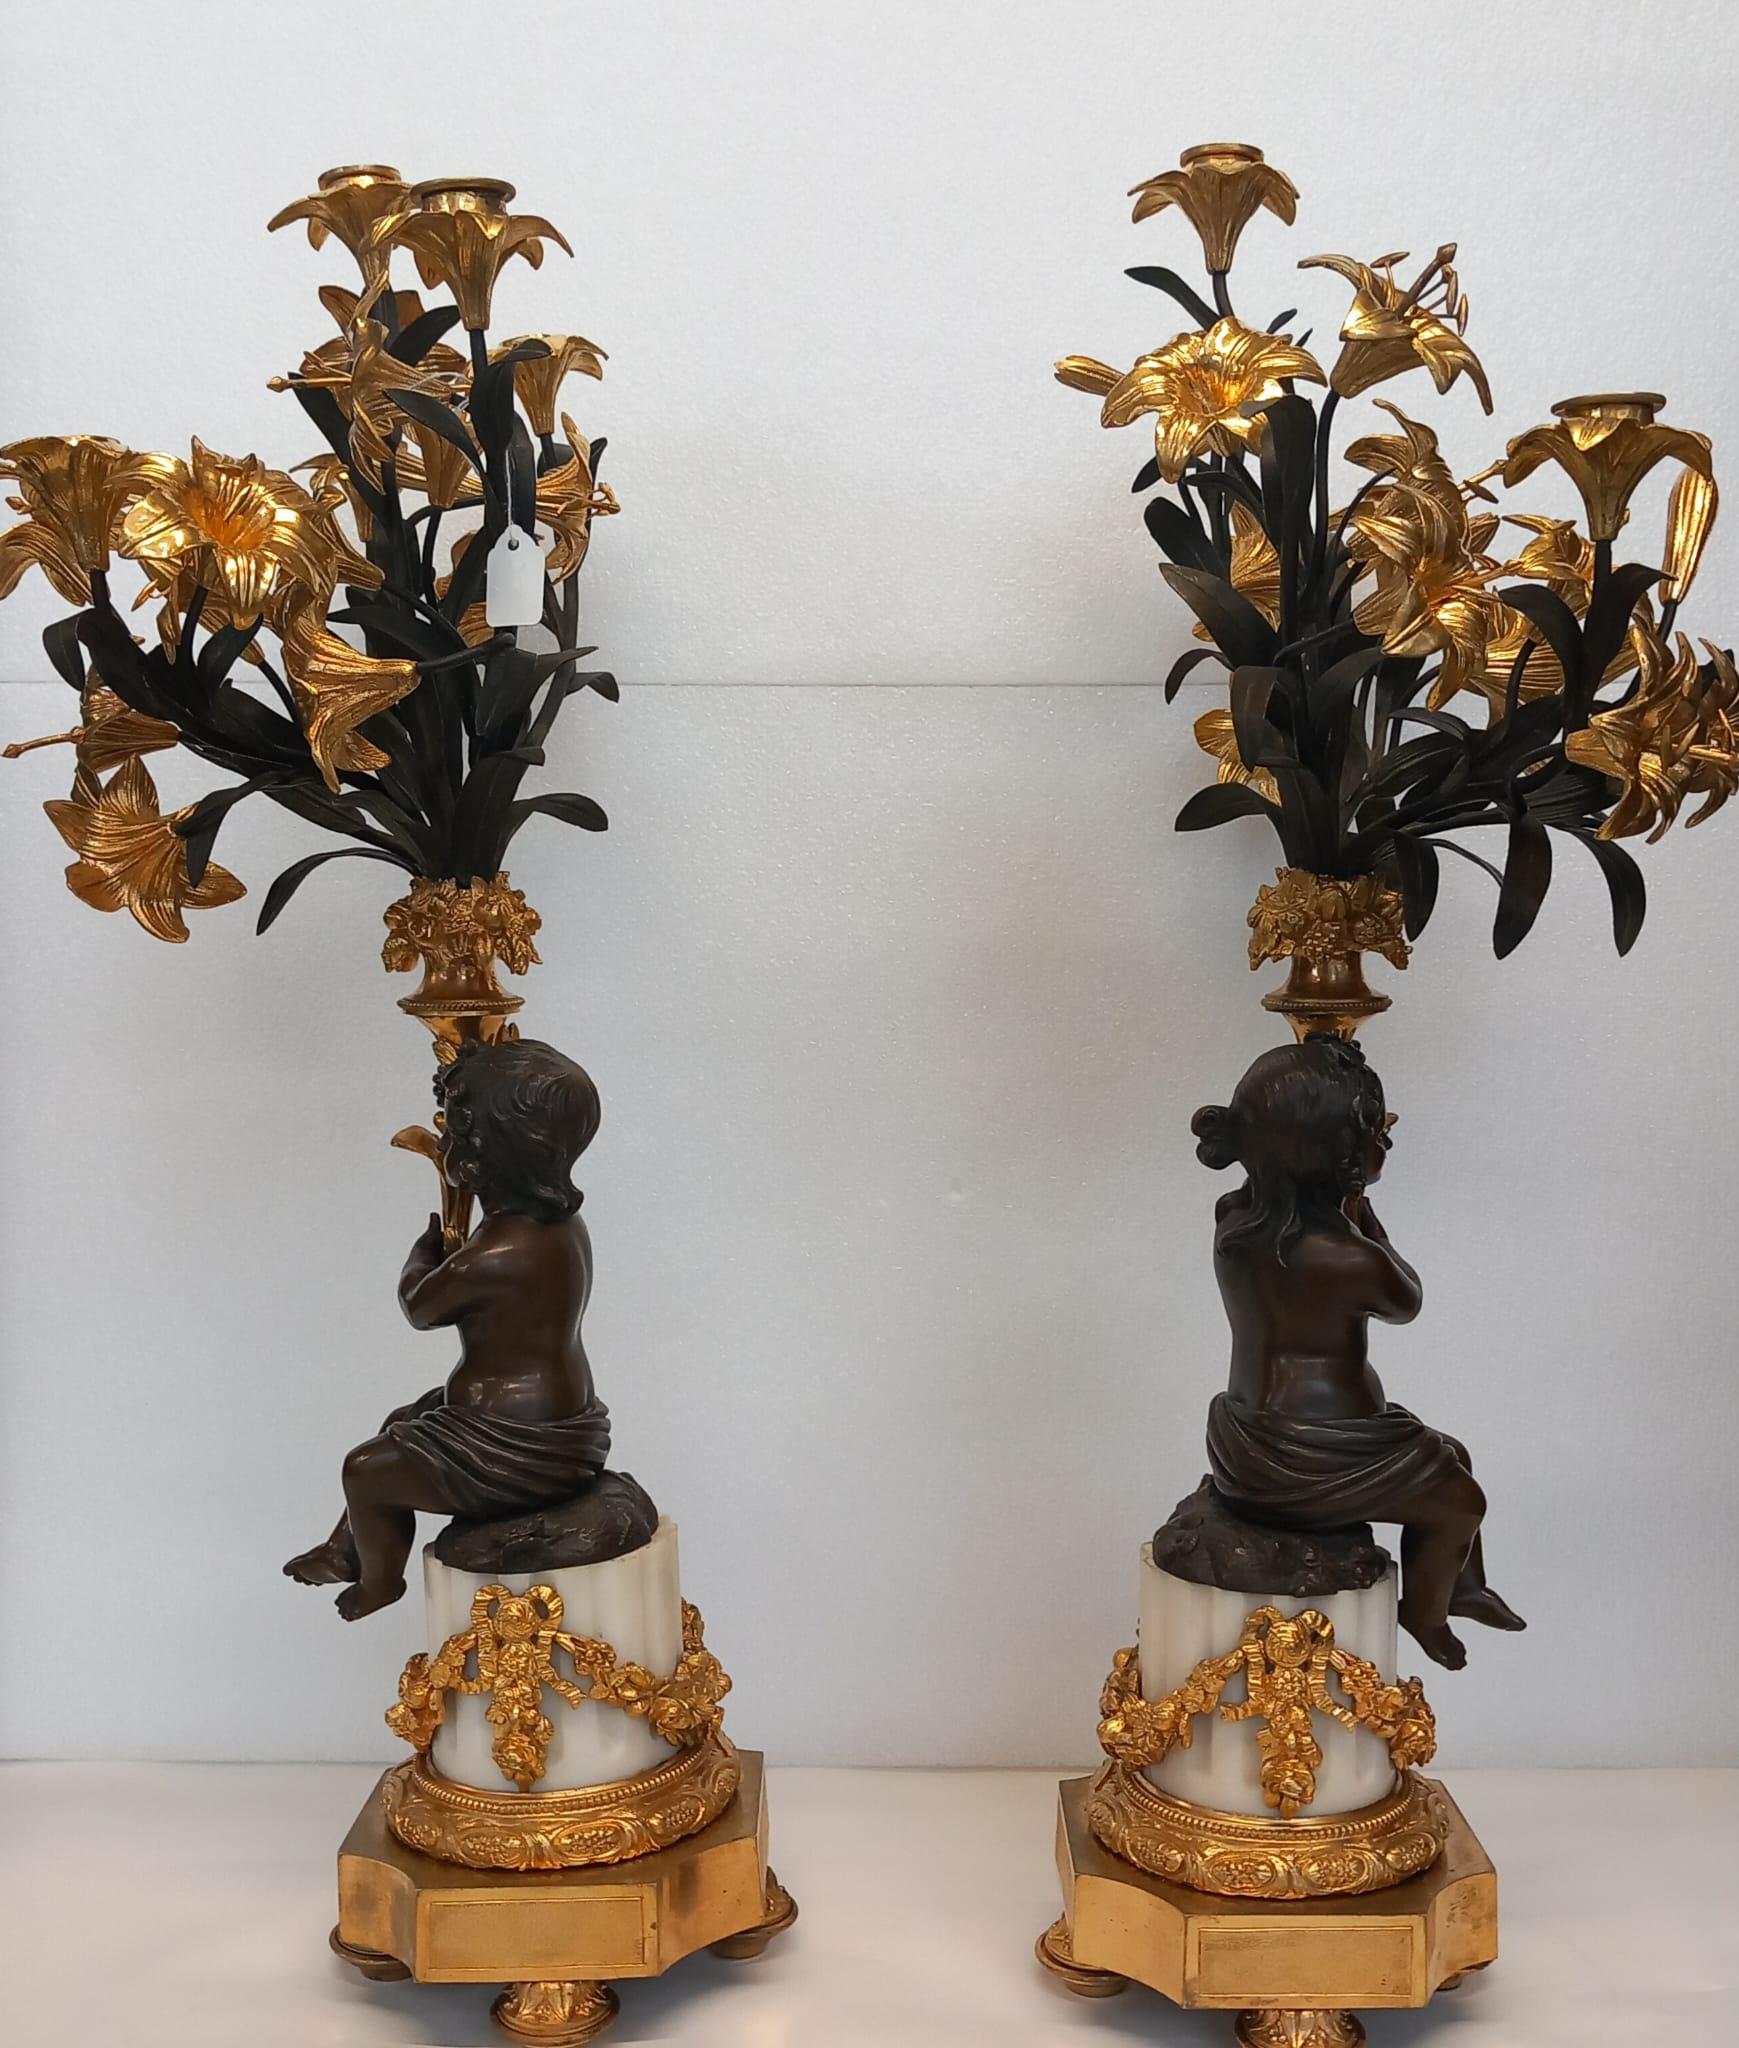 Ein großes antikes Paar französischer neoklassizistischer Kandelaber aus dunkler und vergoldeter Bronze, die einen Jungen und ein Mädchen darstellen, die auf einer weißen Marmorsäule sitzen und jeweils ein Füllhorn aus vergoldeten Tigerlilien mit 5